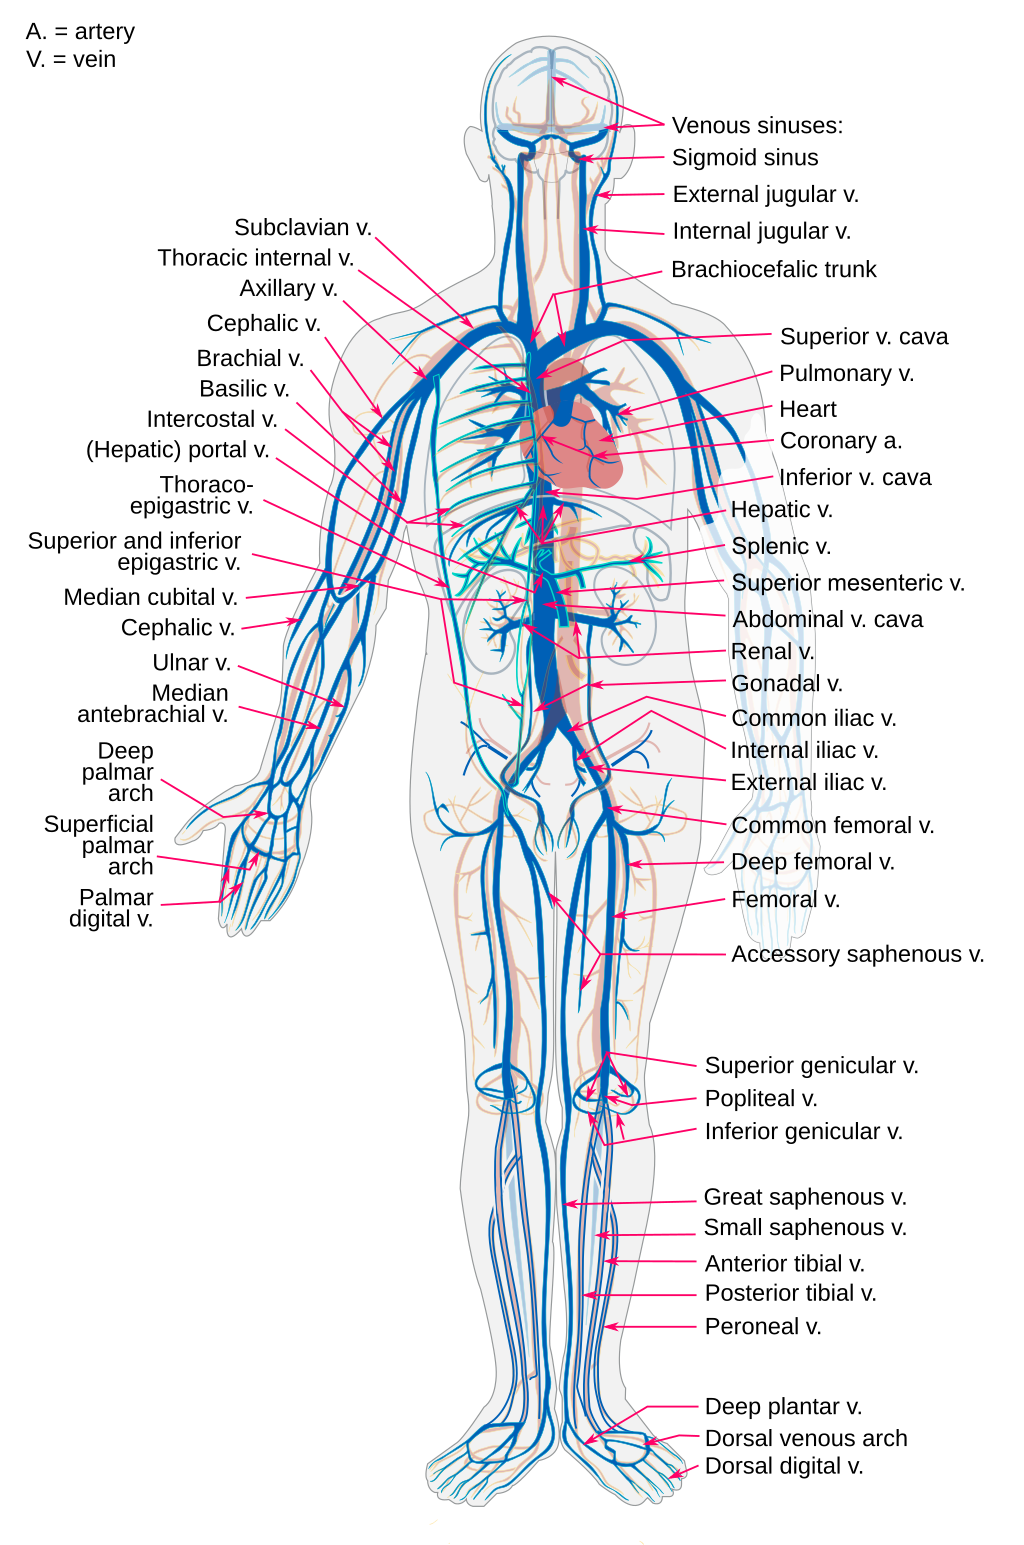 Нижние конечности: анатомия и особенности их венозной системы